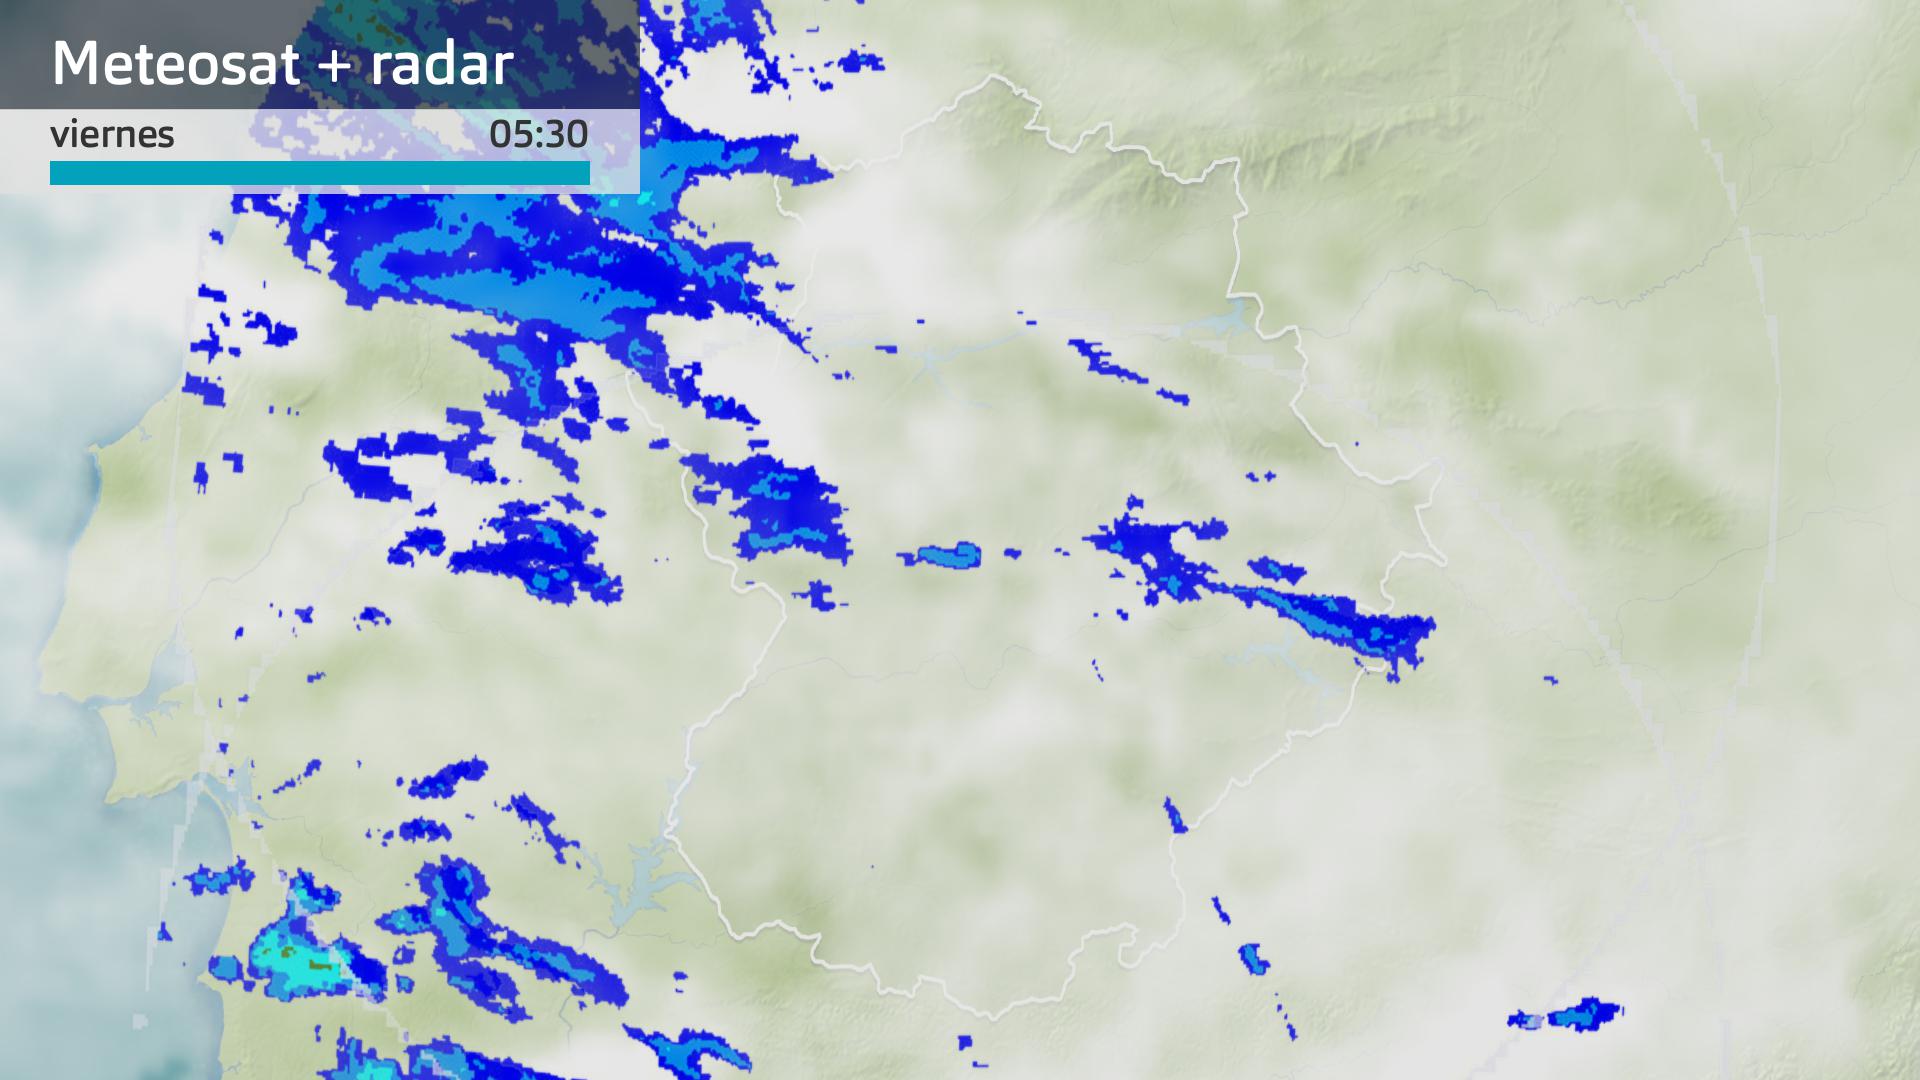 Imagen del Meteosat + radar meteorológico viernes 29 de diciembre 5:30 h.